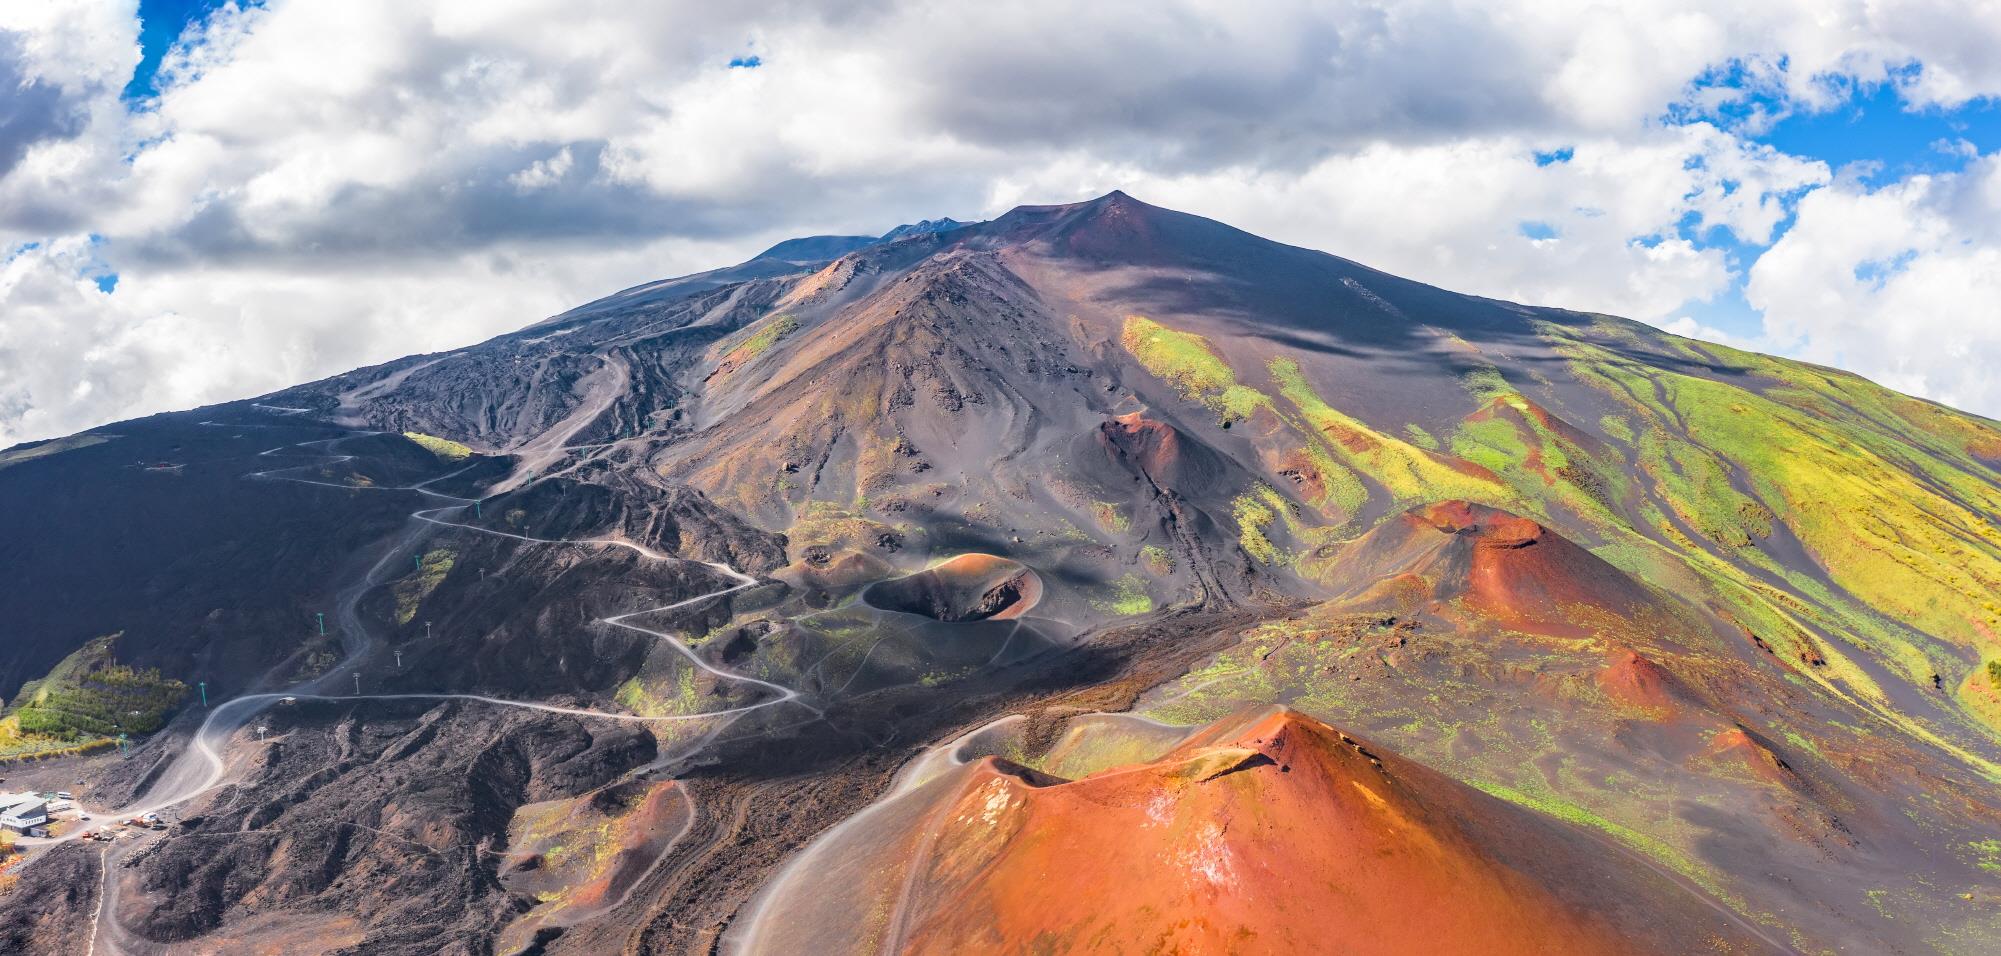 에트나 화산  Mountain Etna volcano